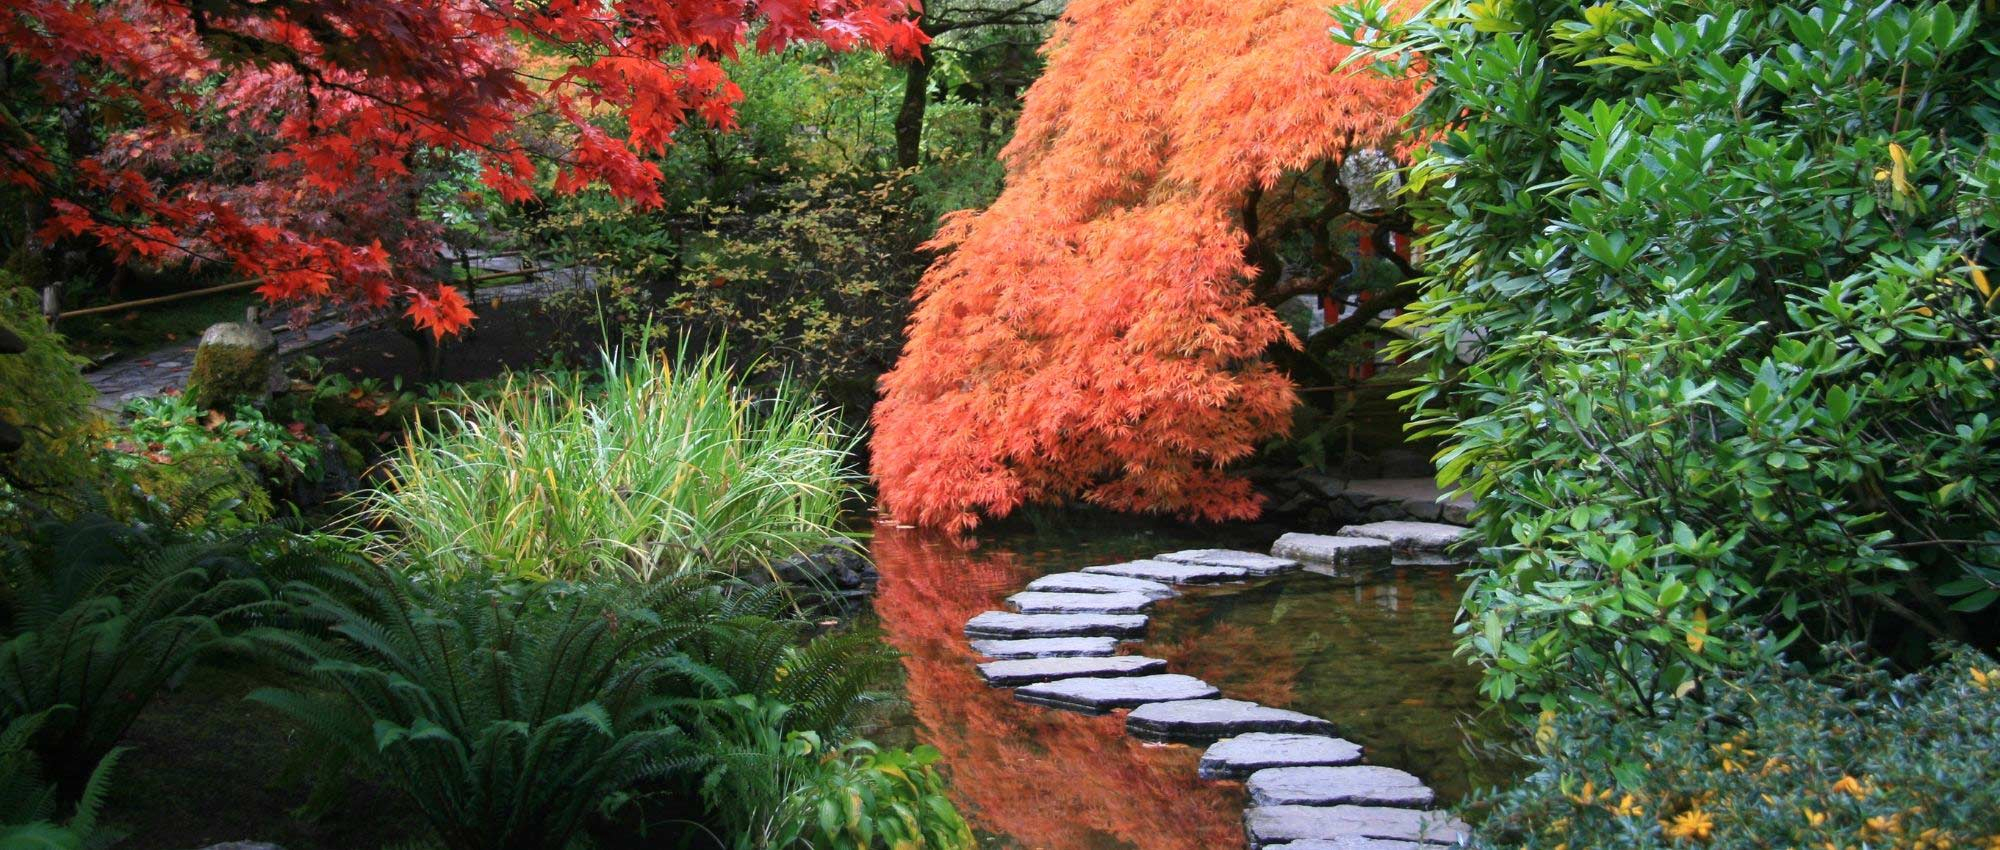 10 Plantes Vivaces Pour Jardin Japonais serapportantà Plante Pour Jardin Japonais